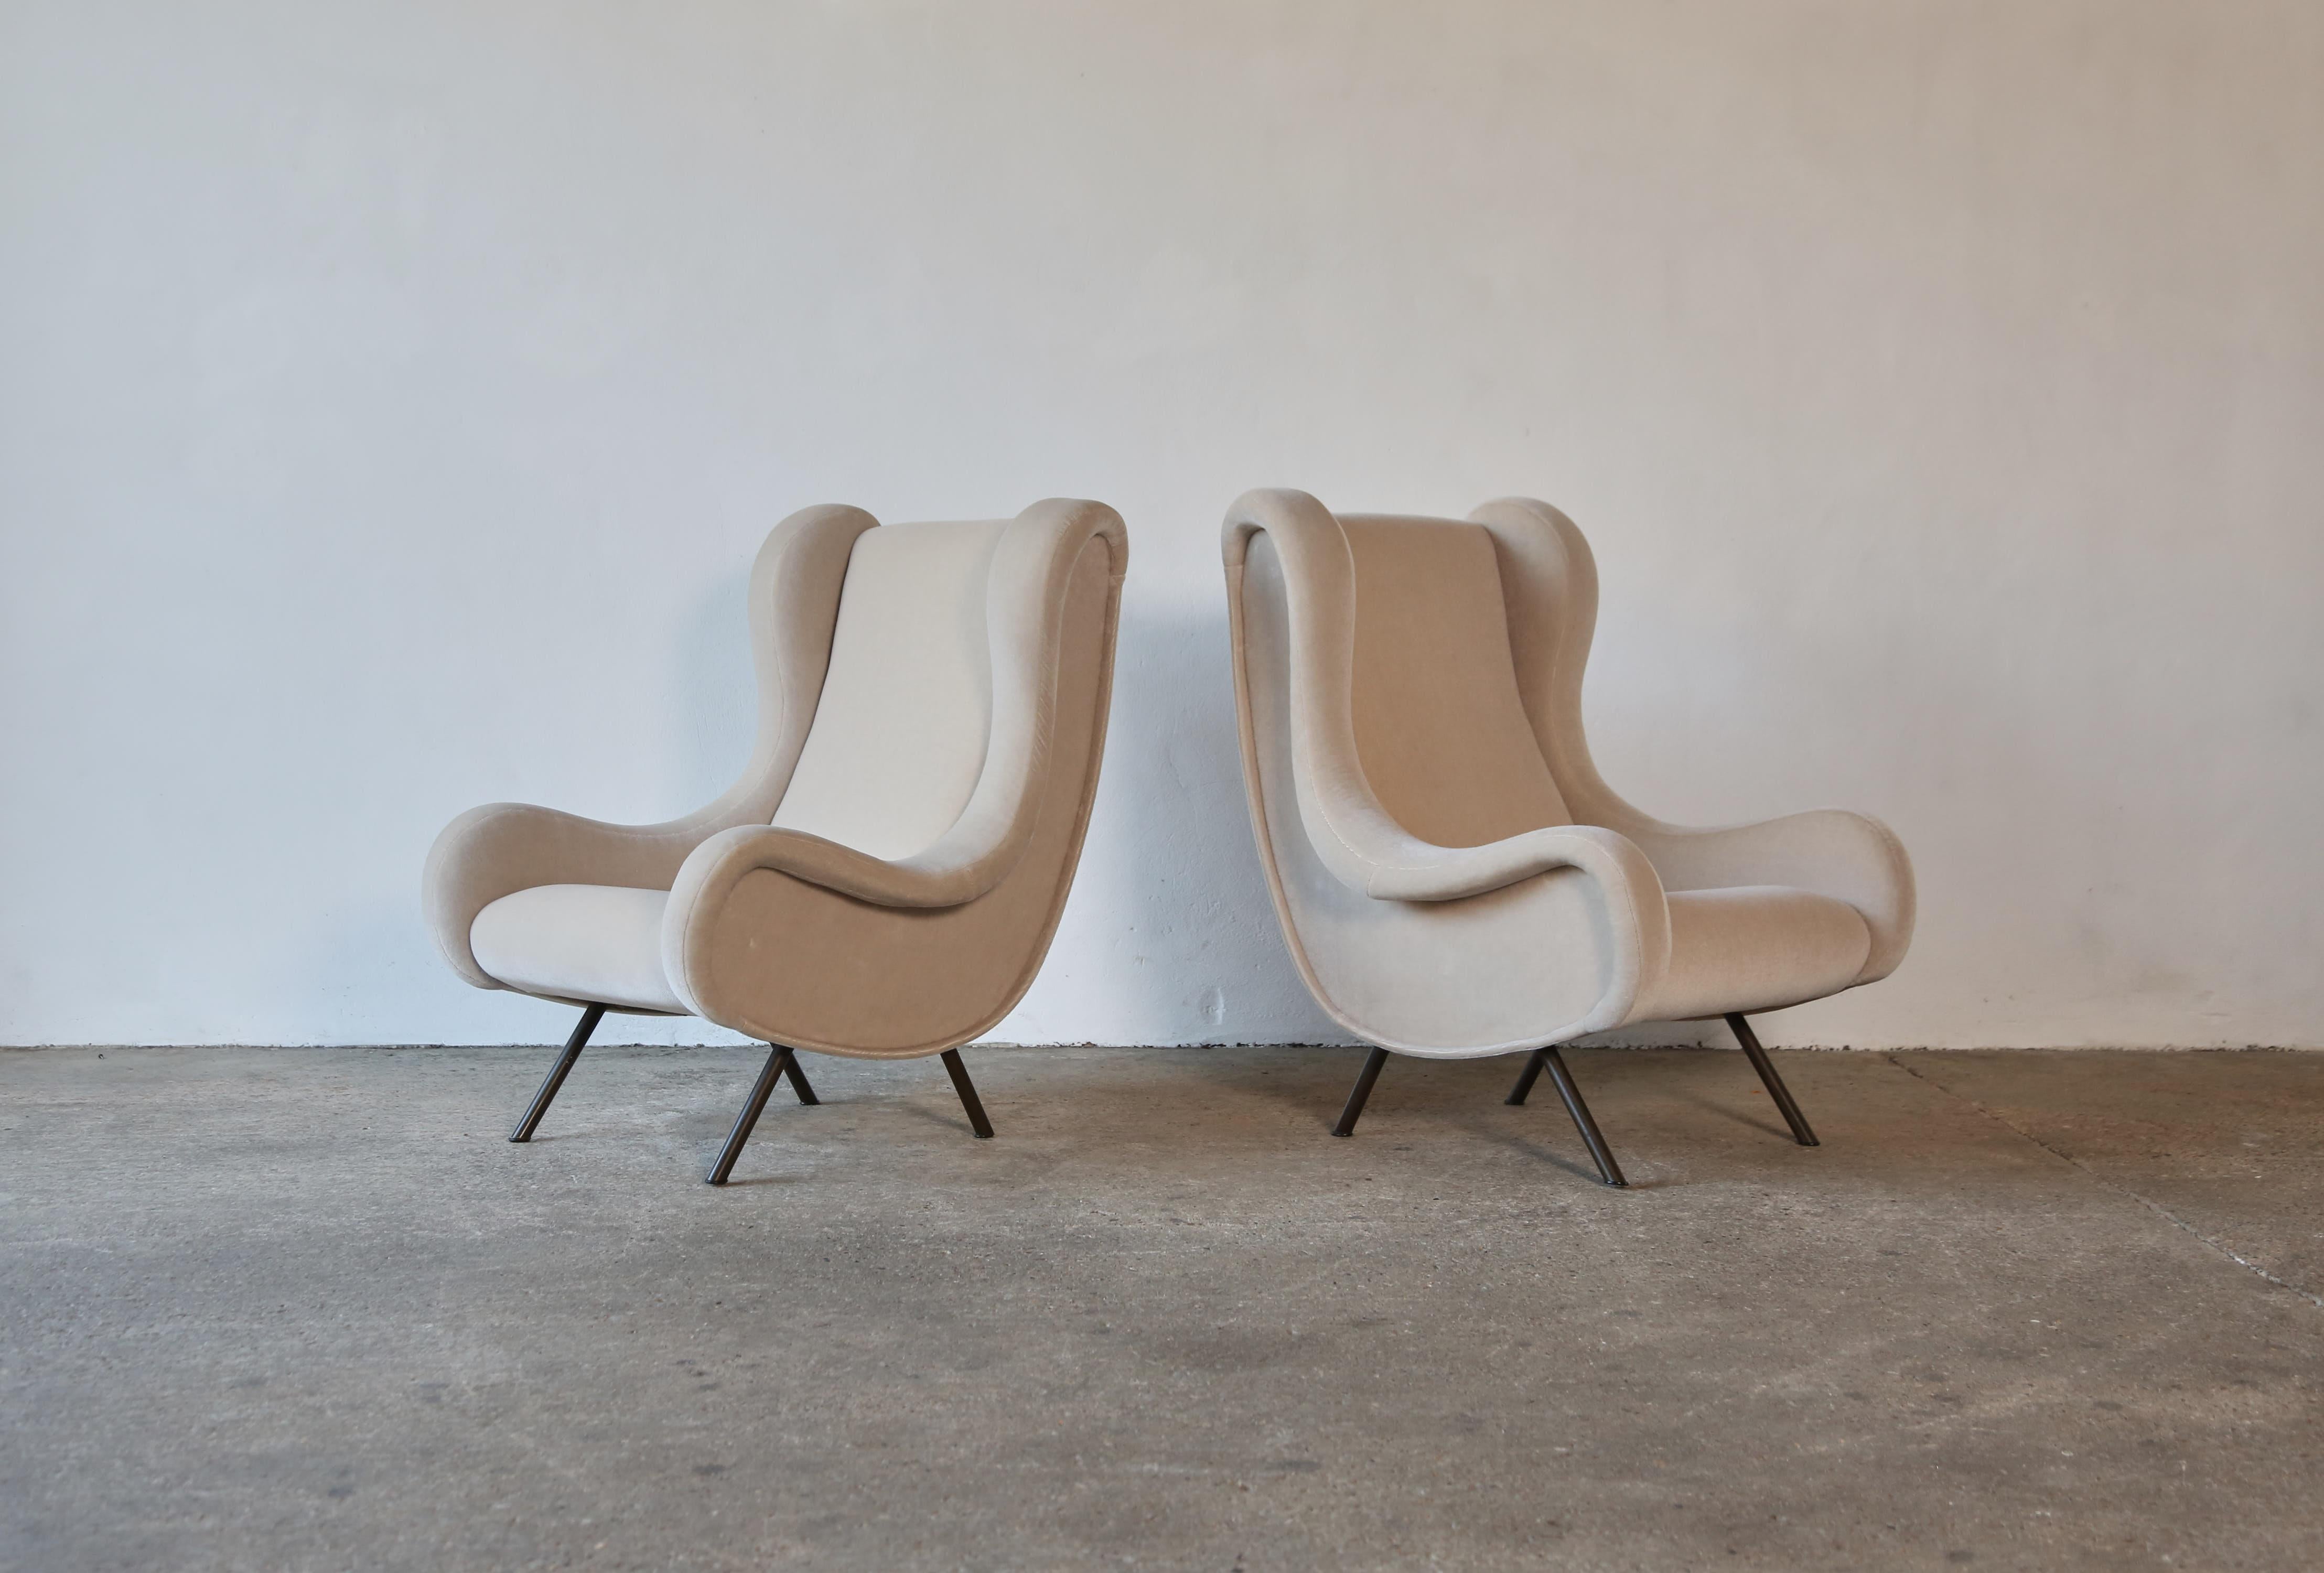 Ein Paar authentische marco zanuso senior stühle, Arflex, Italien, 1960er Jahre. Diese Stühle wurden mit einem hochwertigen elfenbeinfarbenen Samt aus 100 % Mohair neu gepolstert. Schneller Versand weltweit.



